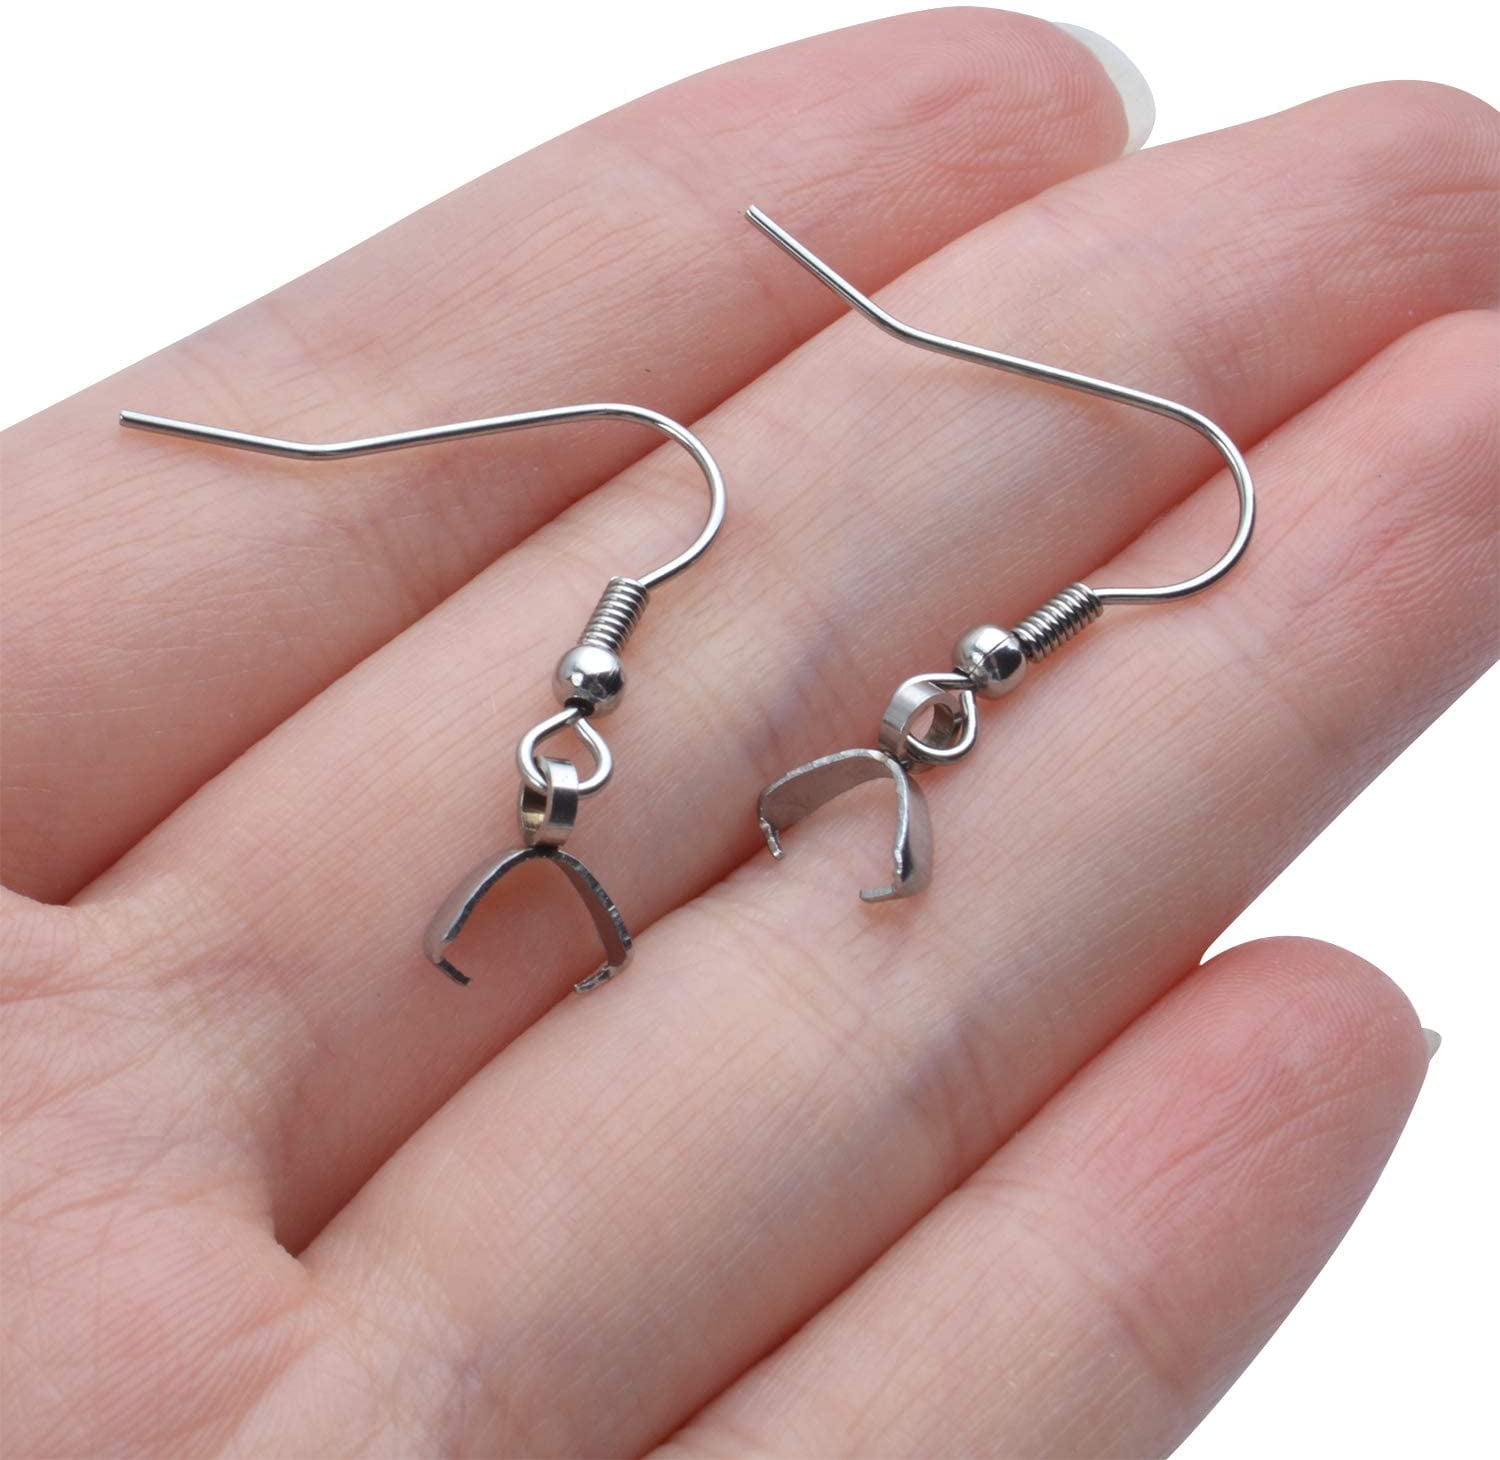 50pcs/lot 9 Styles Steel Earring Hooks Findings Not Allergic Ear Hook  Earrings Clasps For Jewelry Making DIY Earwire Supplies